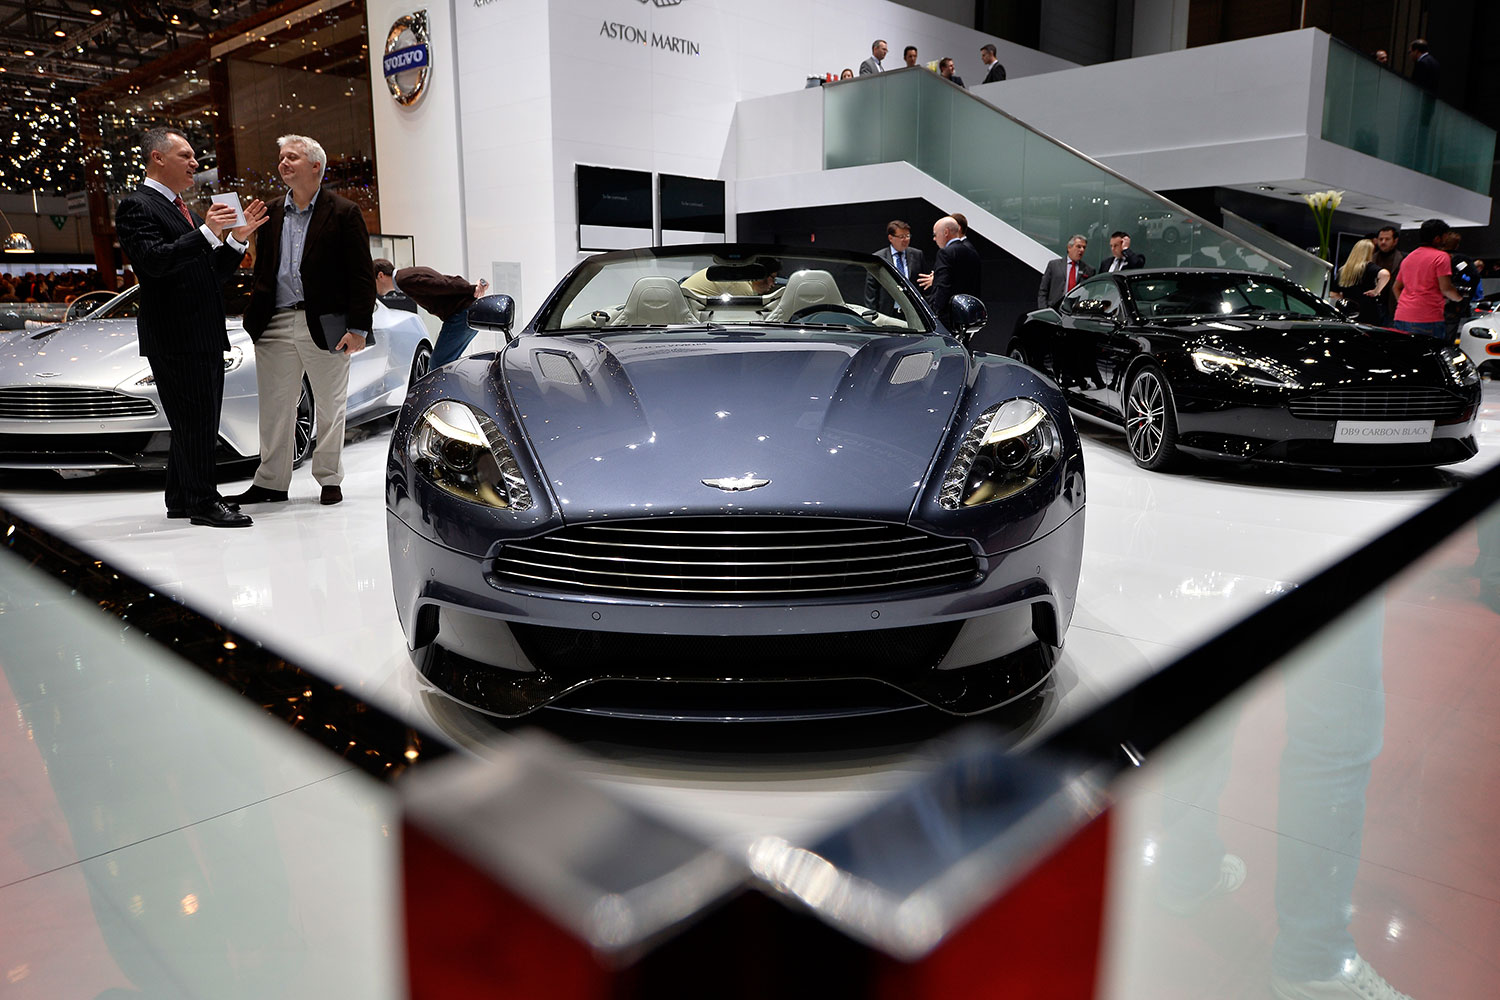 Aston Martin incrementa las ventas de vehículos